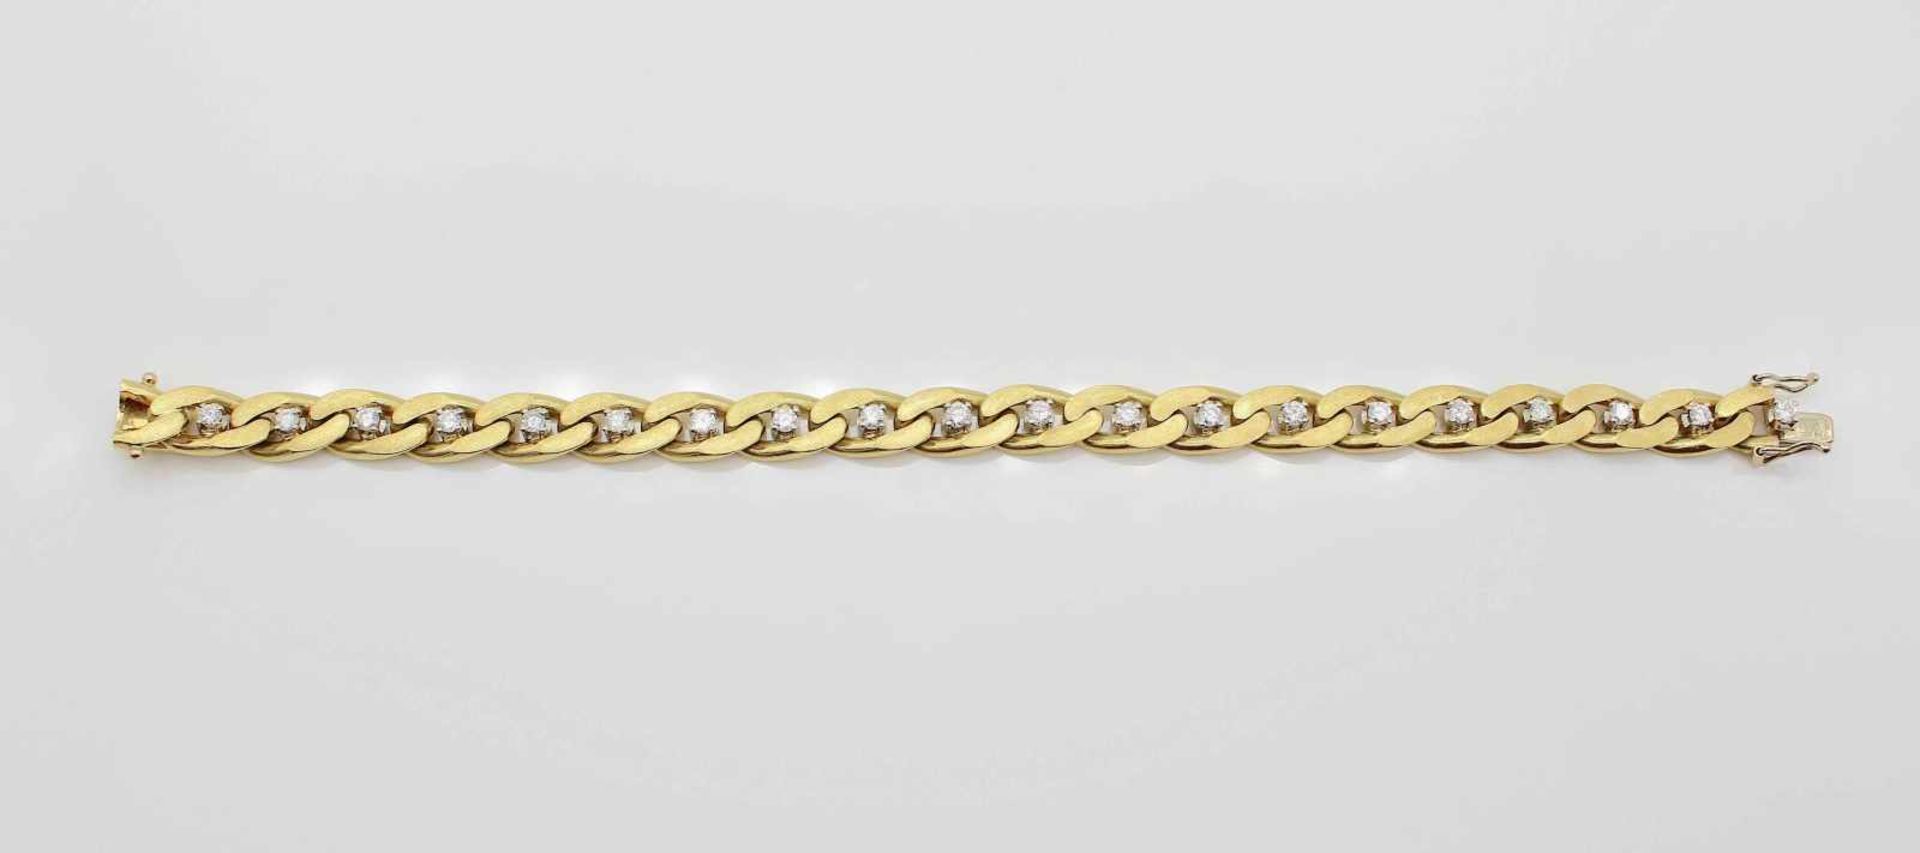 Armband in 750 Gold mit 20 Brillanten gesamt ca. 1,4 ct, mittlerer Reinheits- und Farbgrad , Gewicht